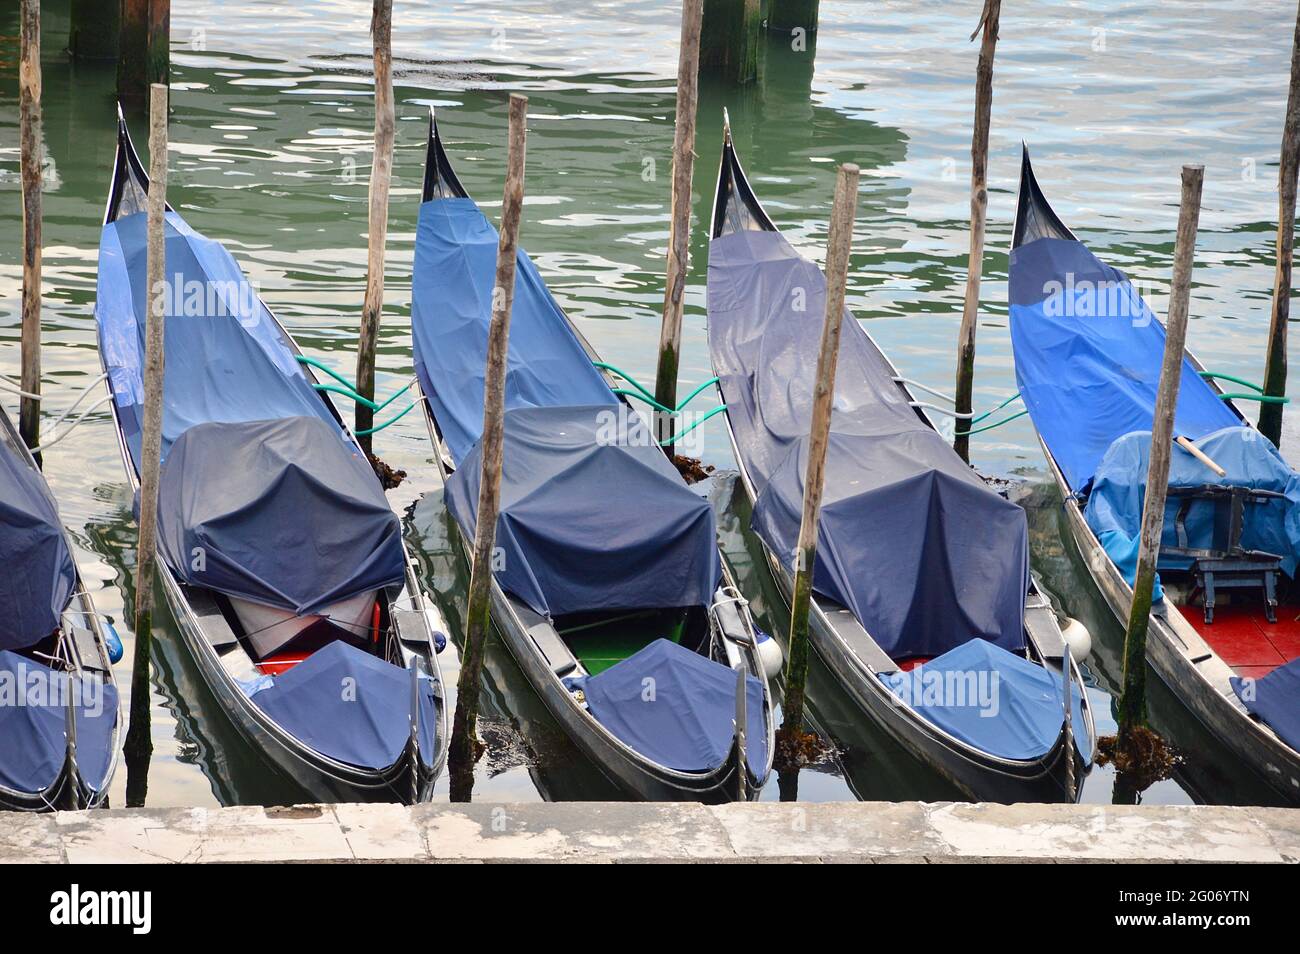 Venezianische Gondeln ruhen aufgrund des Touristenmangels, sind vereinsamt und abgedeckt Foto Stock